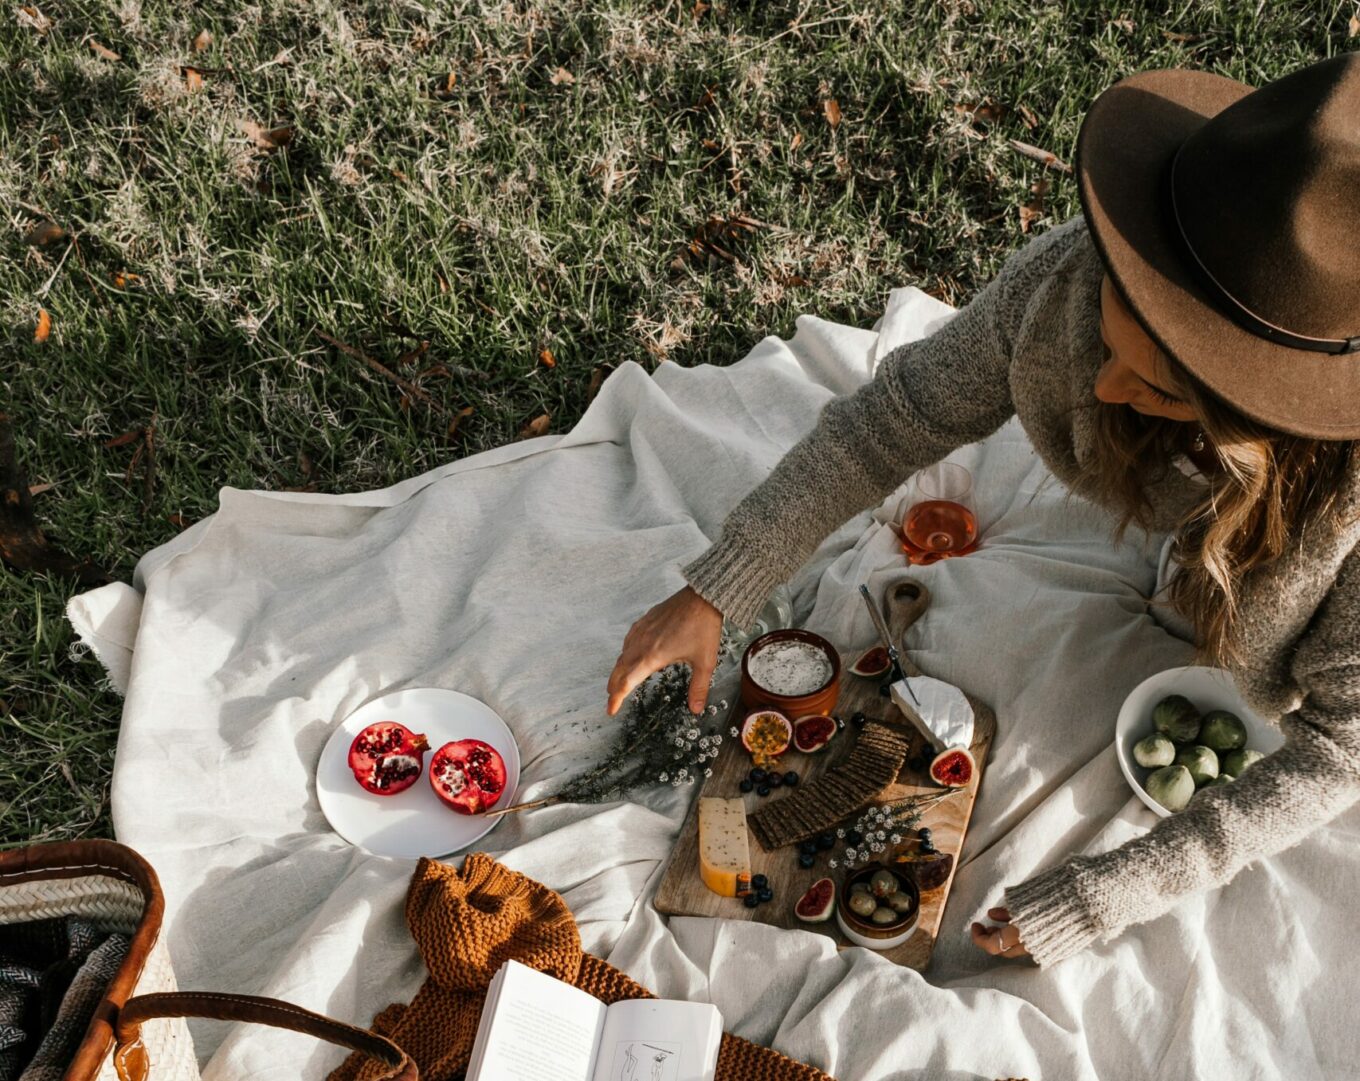 picknicken maastricht - picknick maastricht - picknickbox maastricht - picknickmand maastricht - picknicken in maastricht